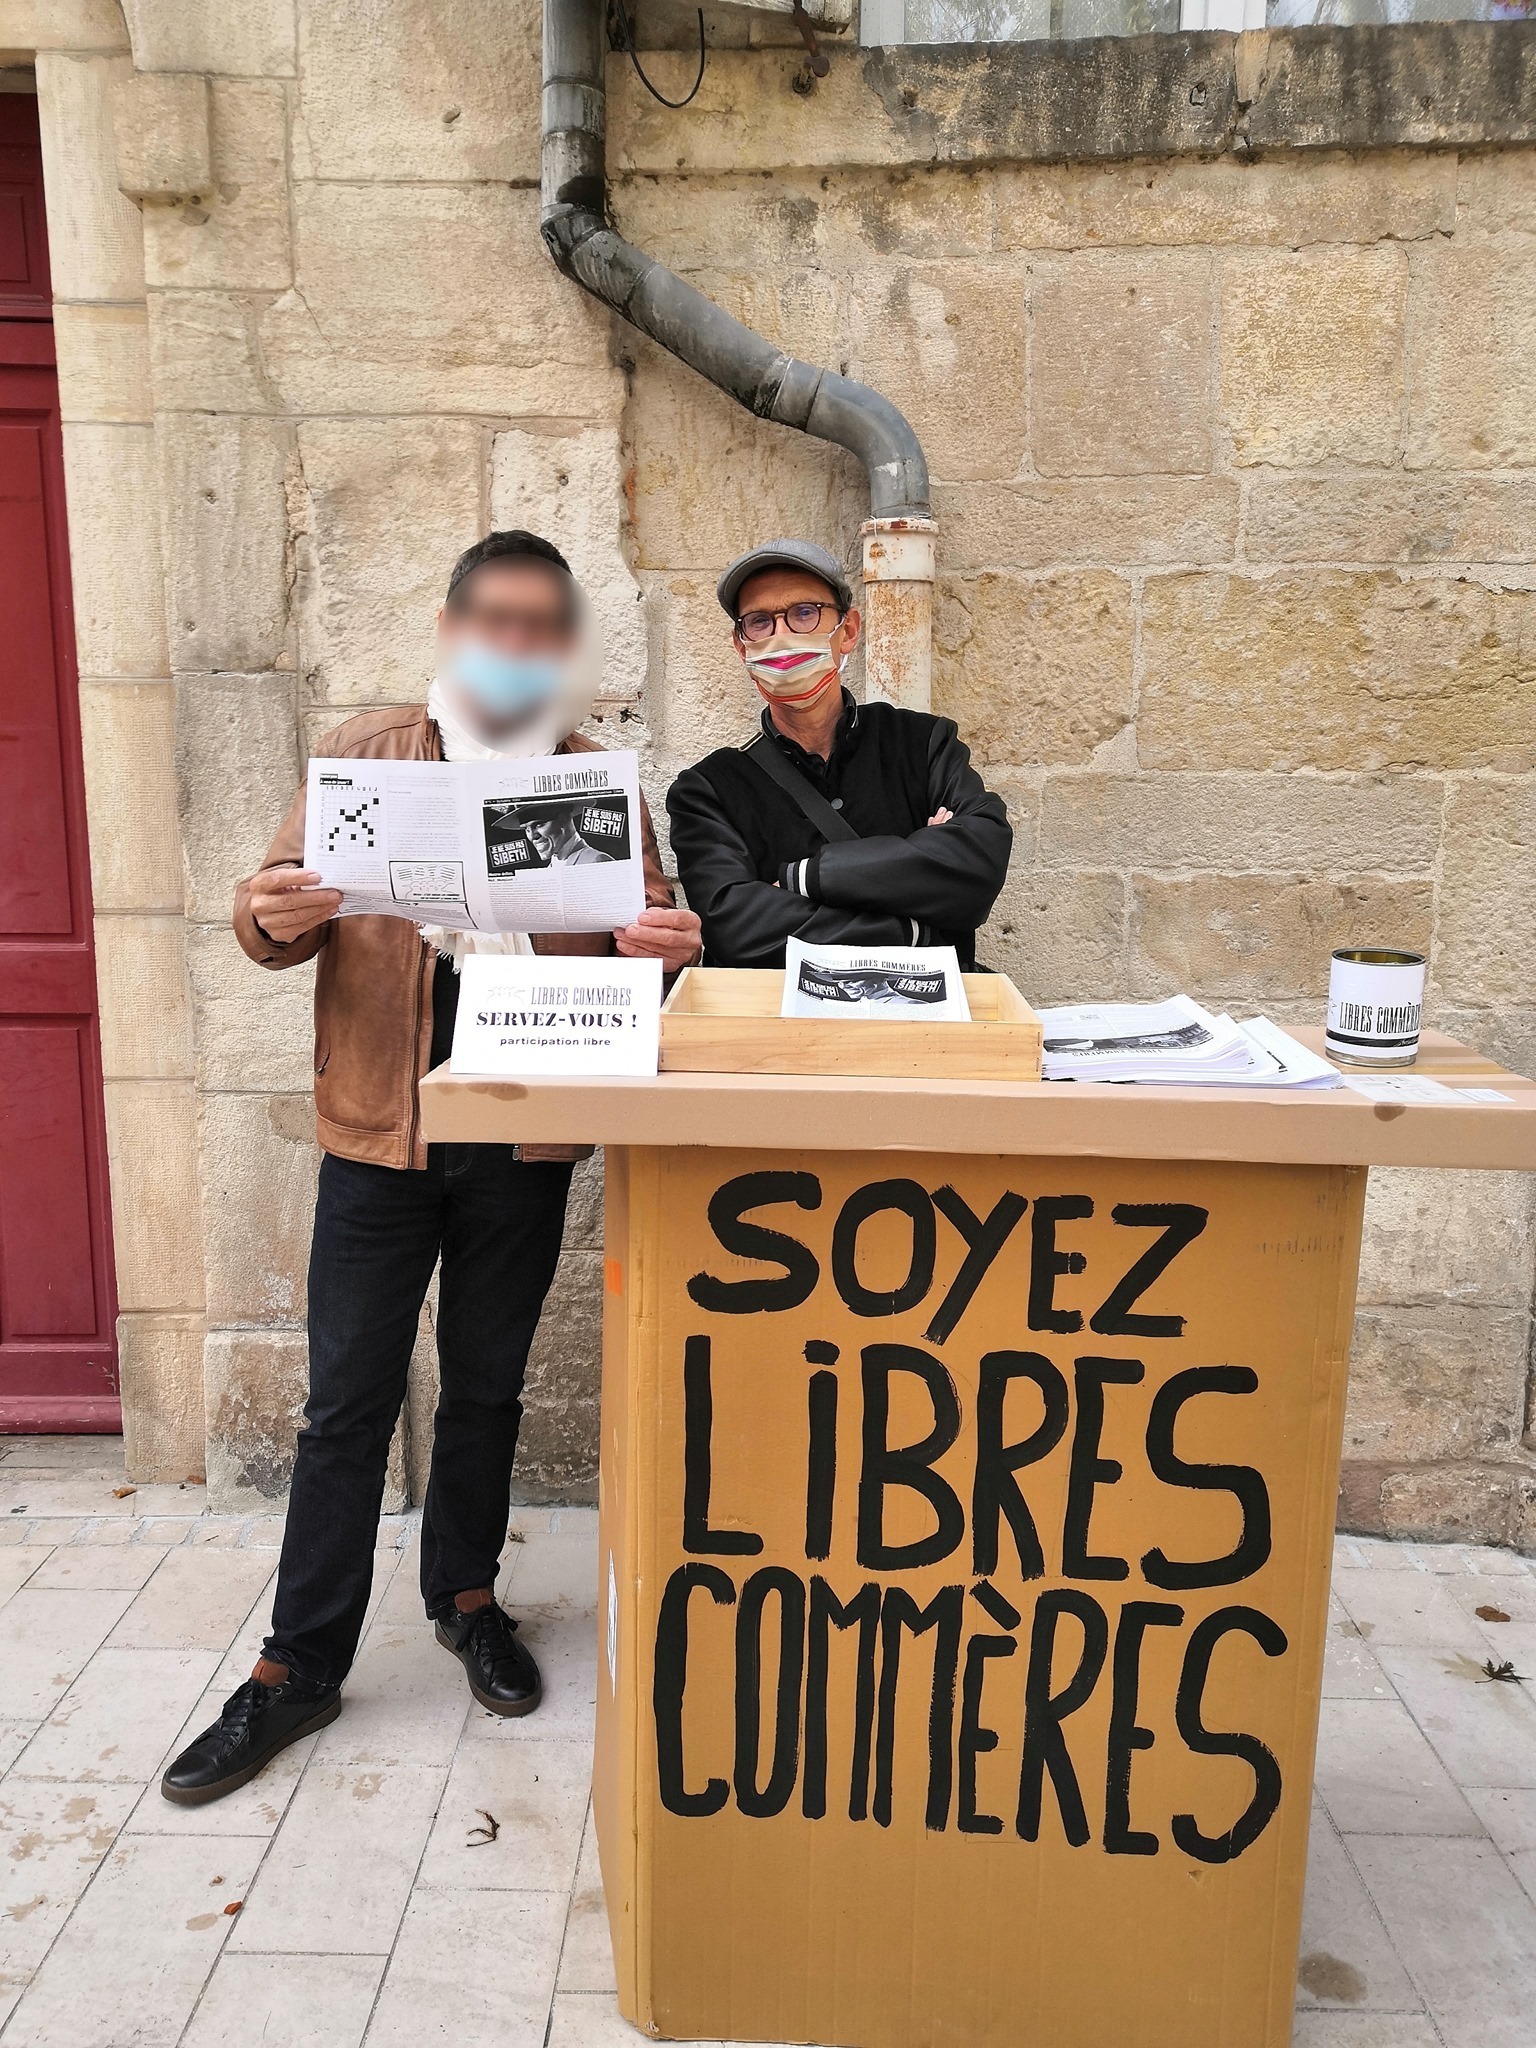 Image de notre stand en carton installé dans la rue pour une distribution de journaux.